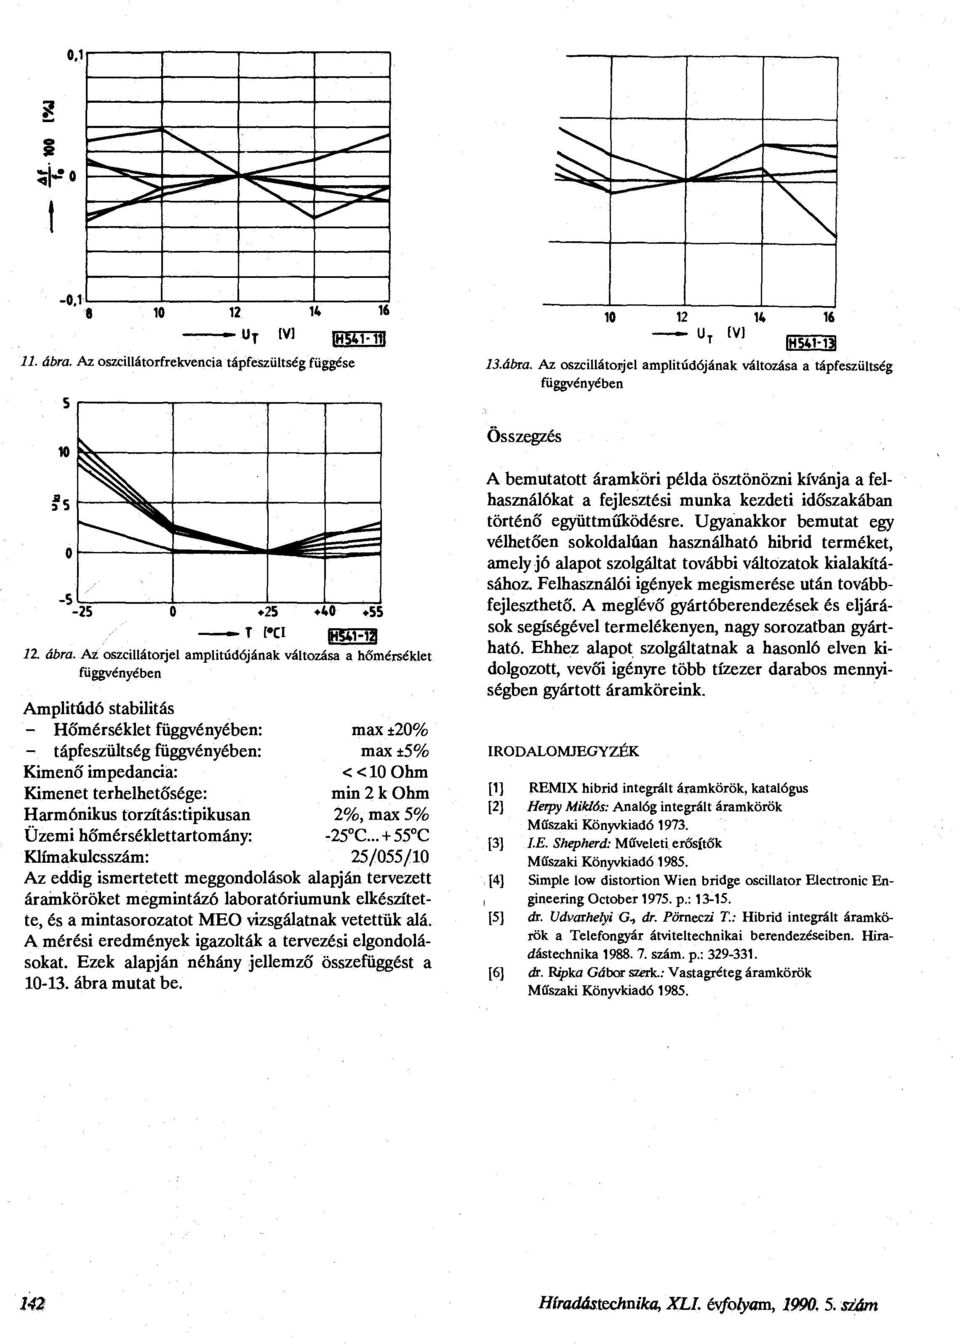 Ohm Kimenet terhelhetősége: min 2 k Ohm Harmónikus torzítás:tipikusan 2%, max 5% Üzemi hőmérséklettartomány: -25 C.